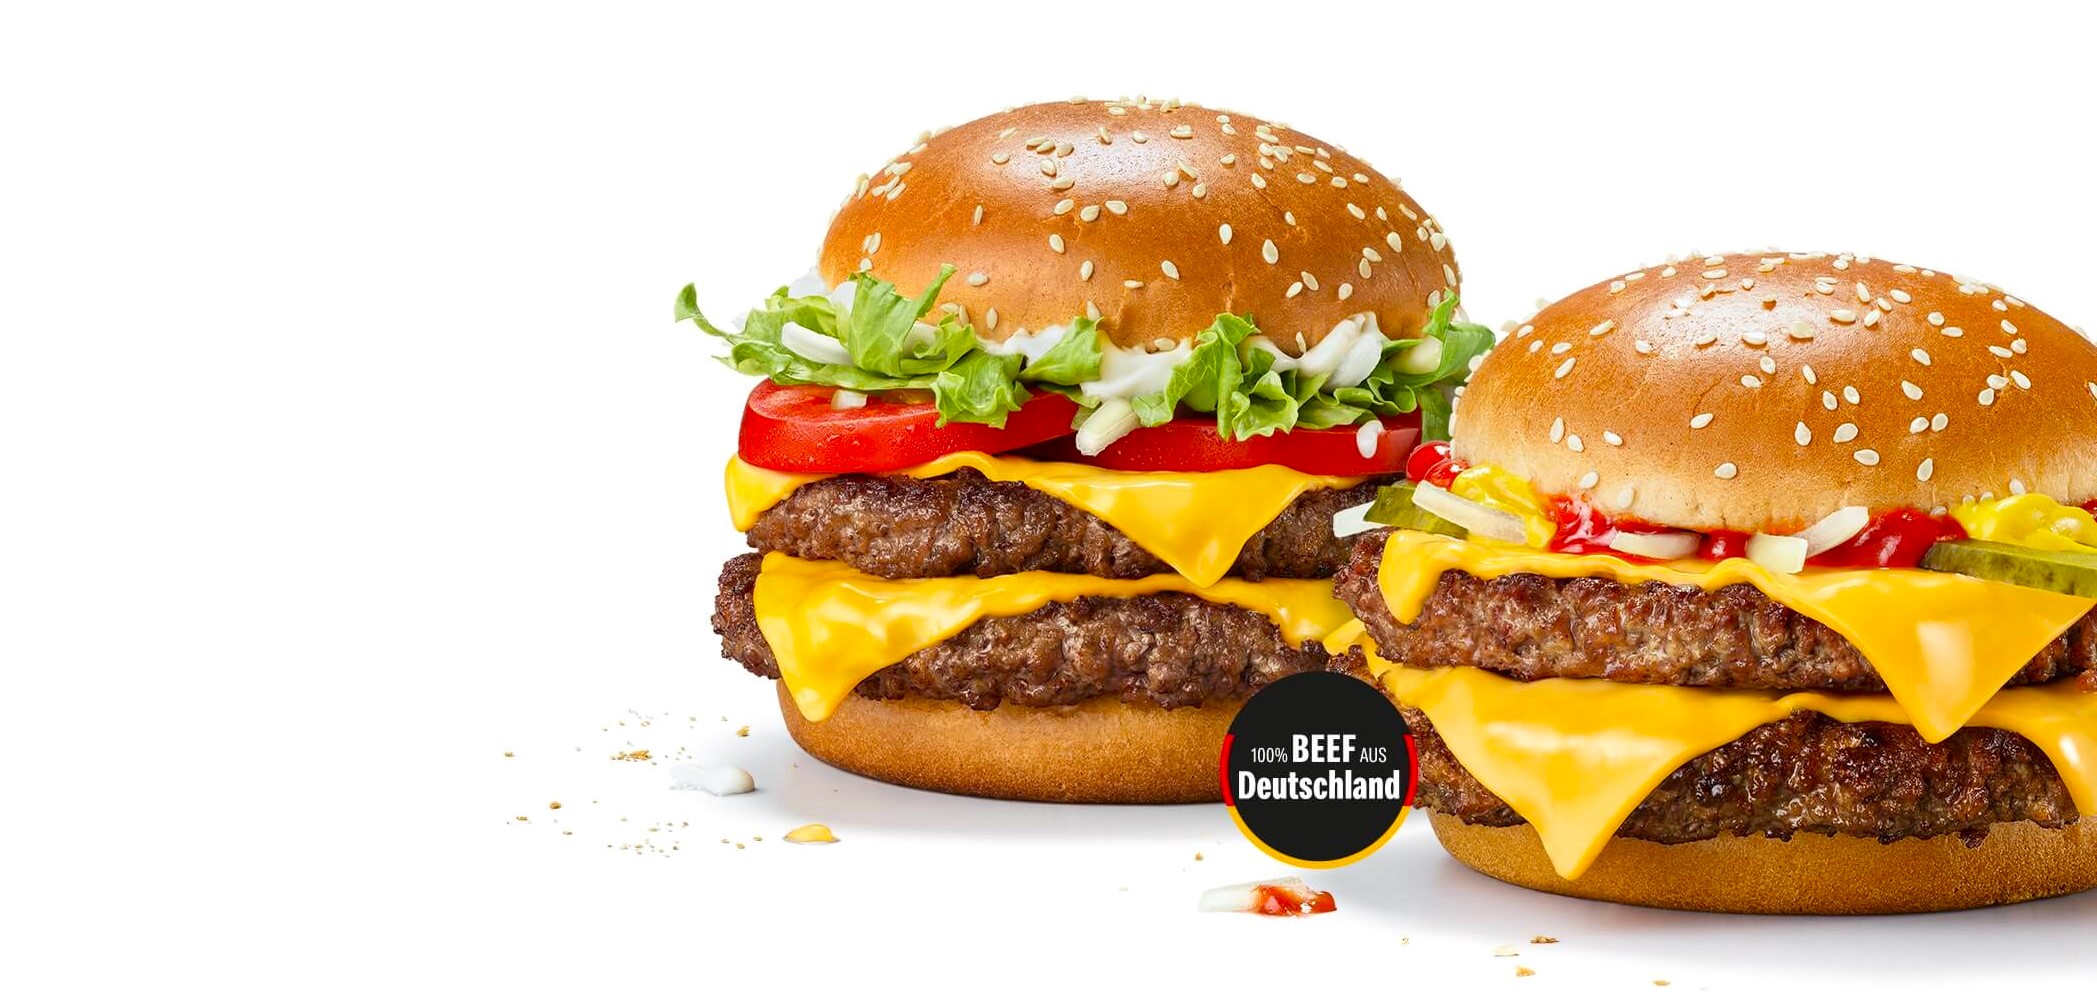 McDonald's Double Hamburger Royal TS and Double Hamburger Royal cheese